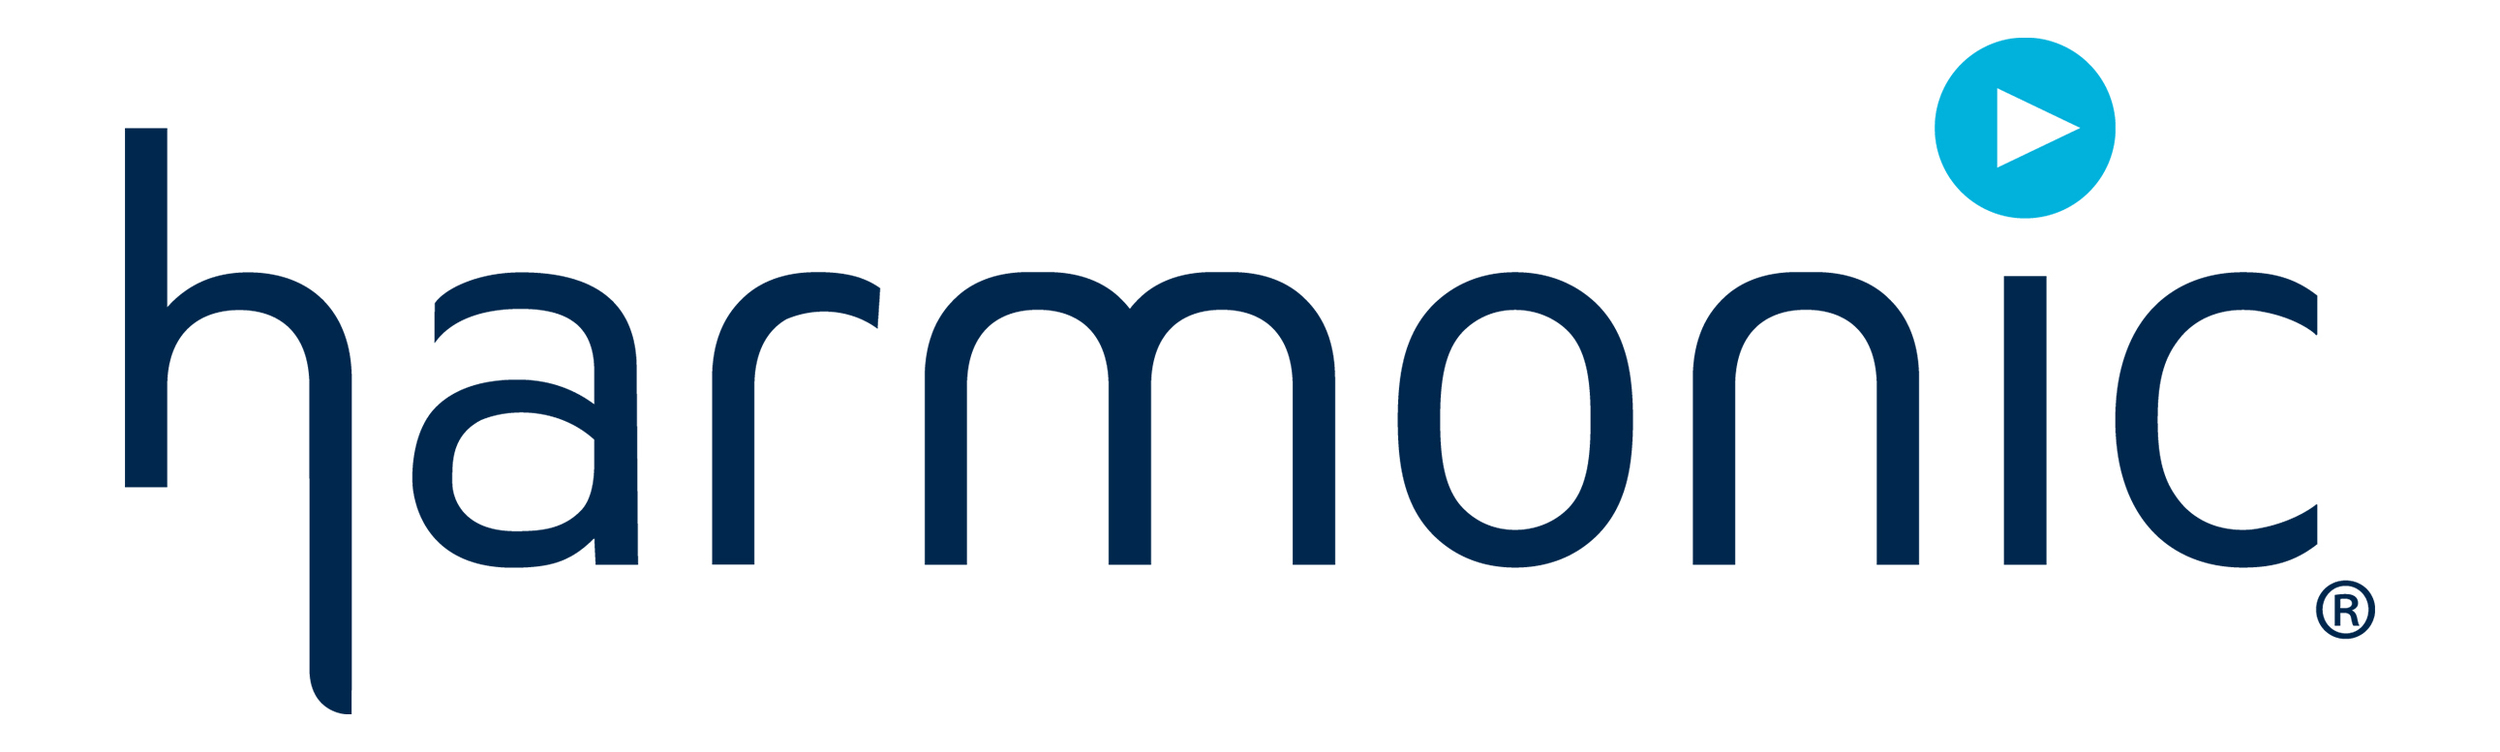 HARMONIC-logo.jpg